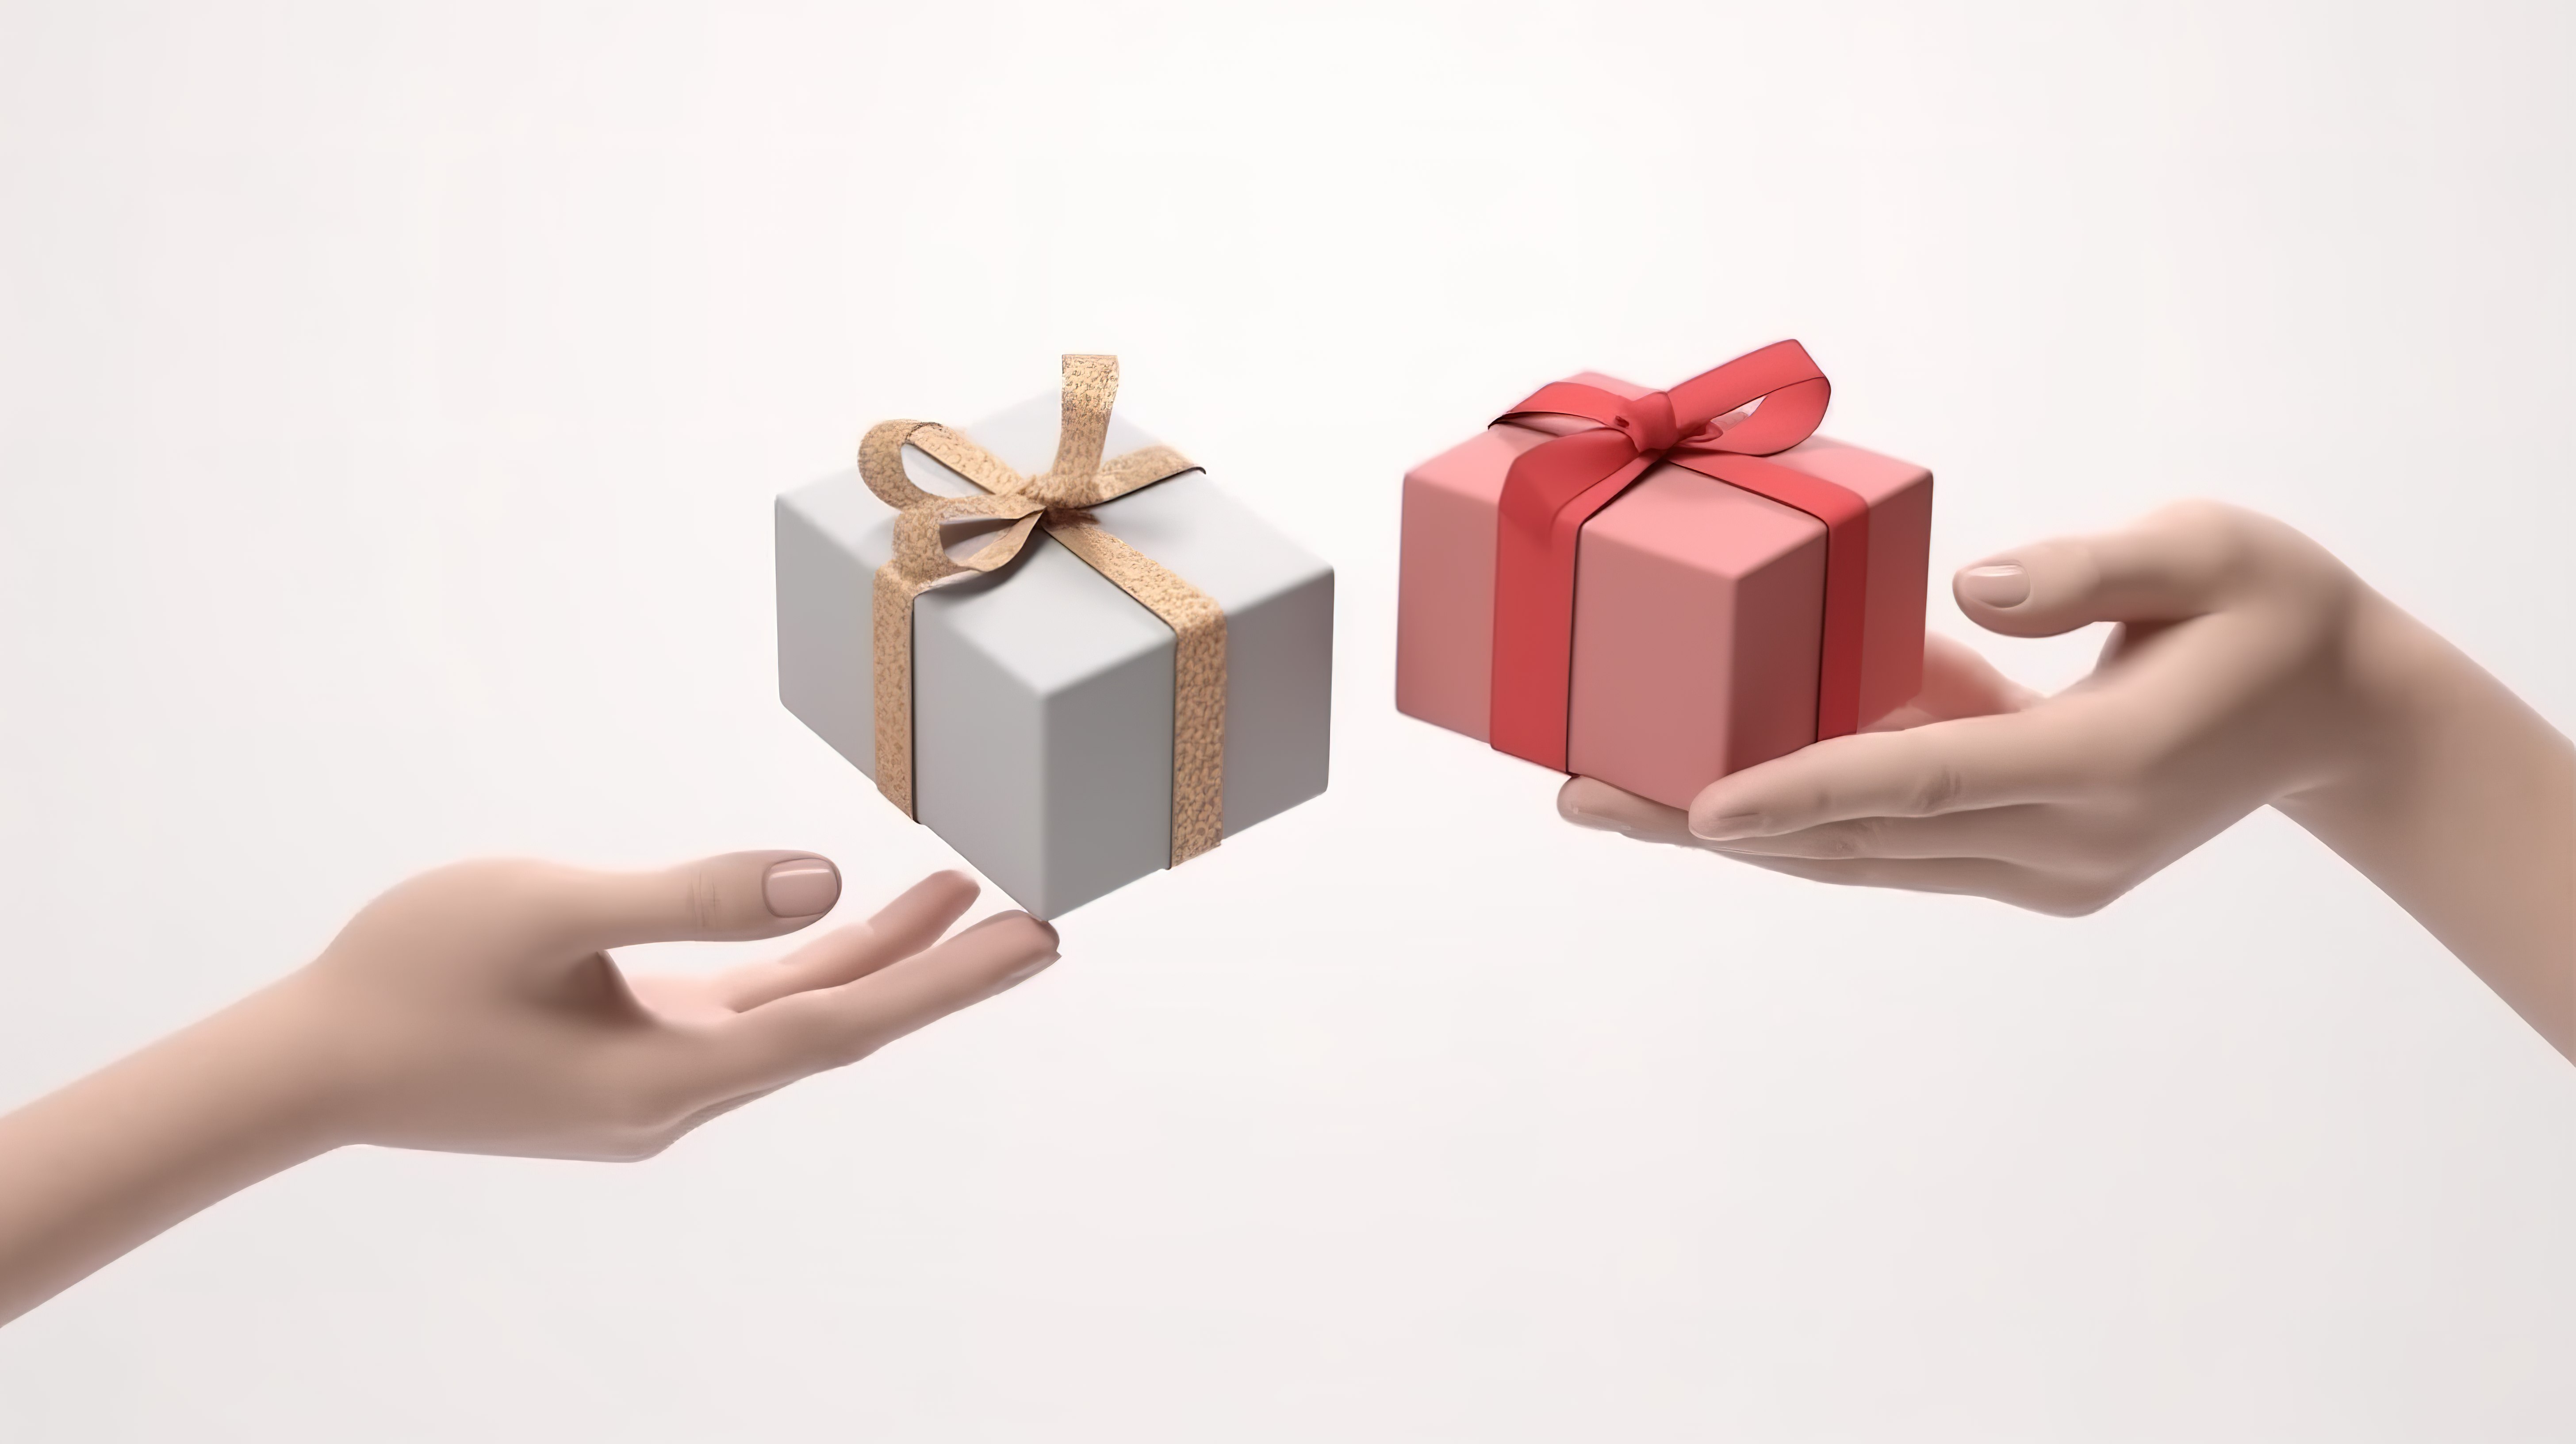 一个 3D 渲染图，描绘了一只手将礼物送给另一只手，在白色背景上强调了慈善和慷慨的理念图片